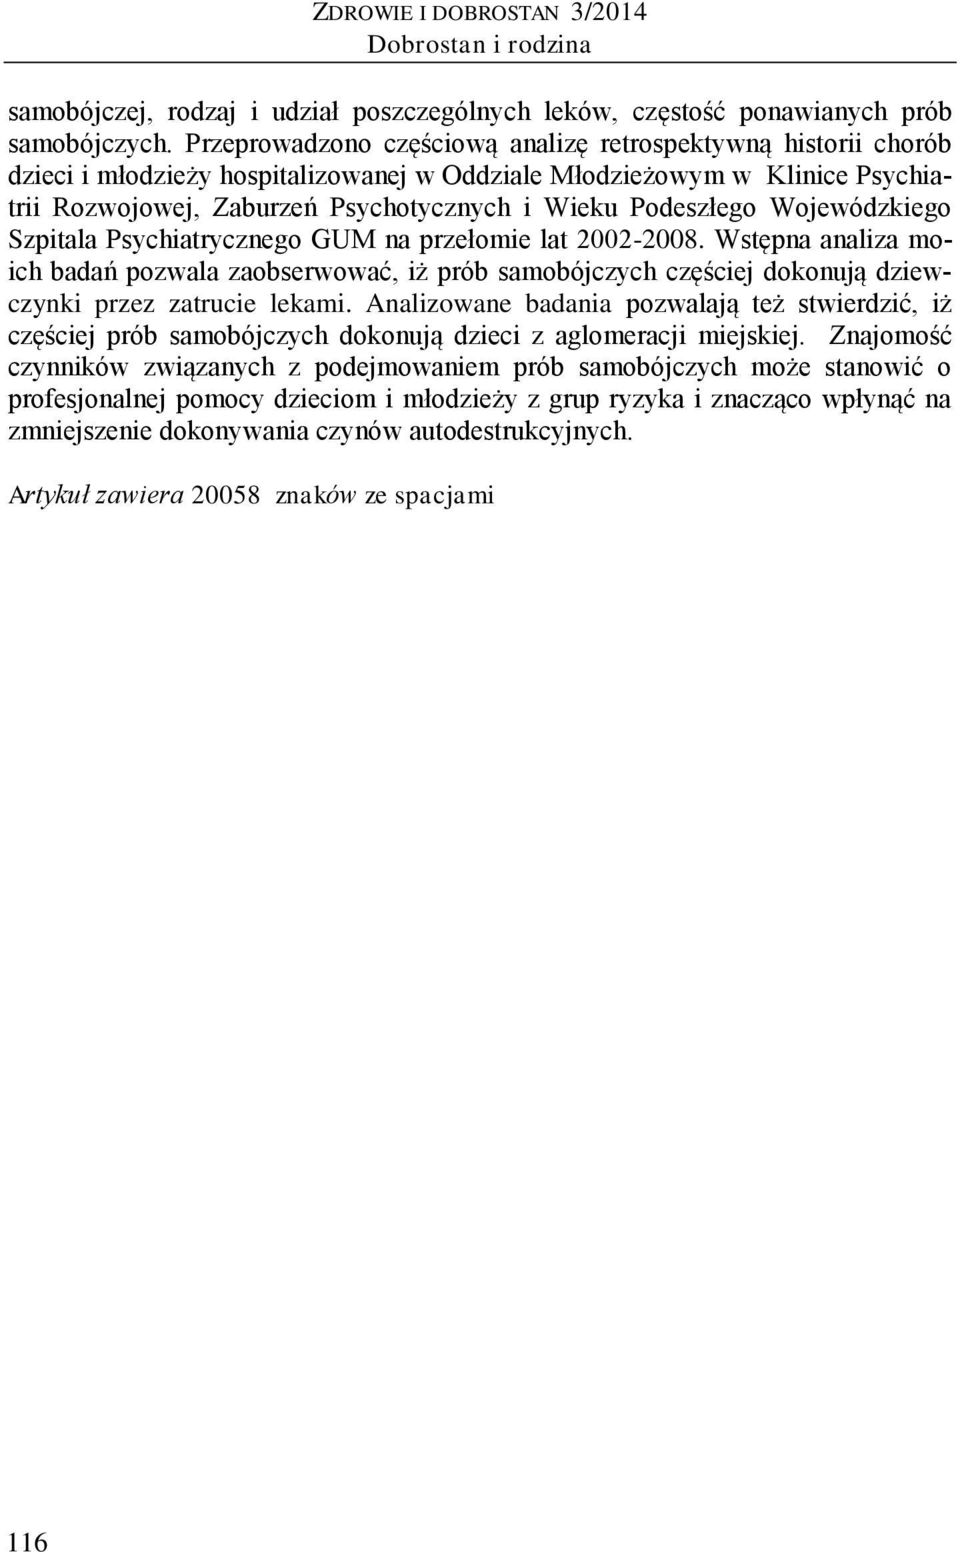 Podeszłego Wojewódzkiego Szpitala Psychiatrycznego GUM na przełomie lat 2002-2008.